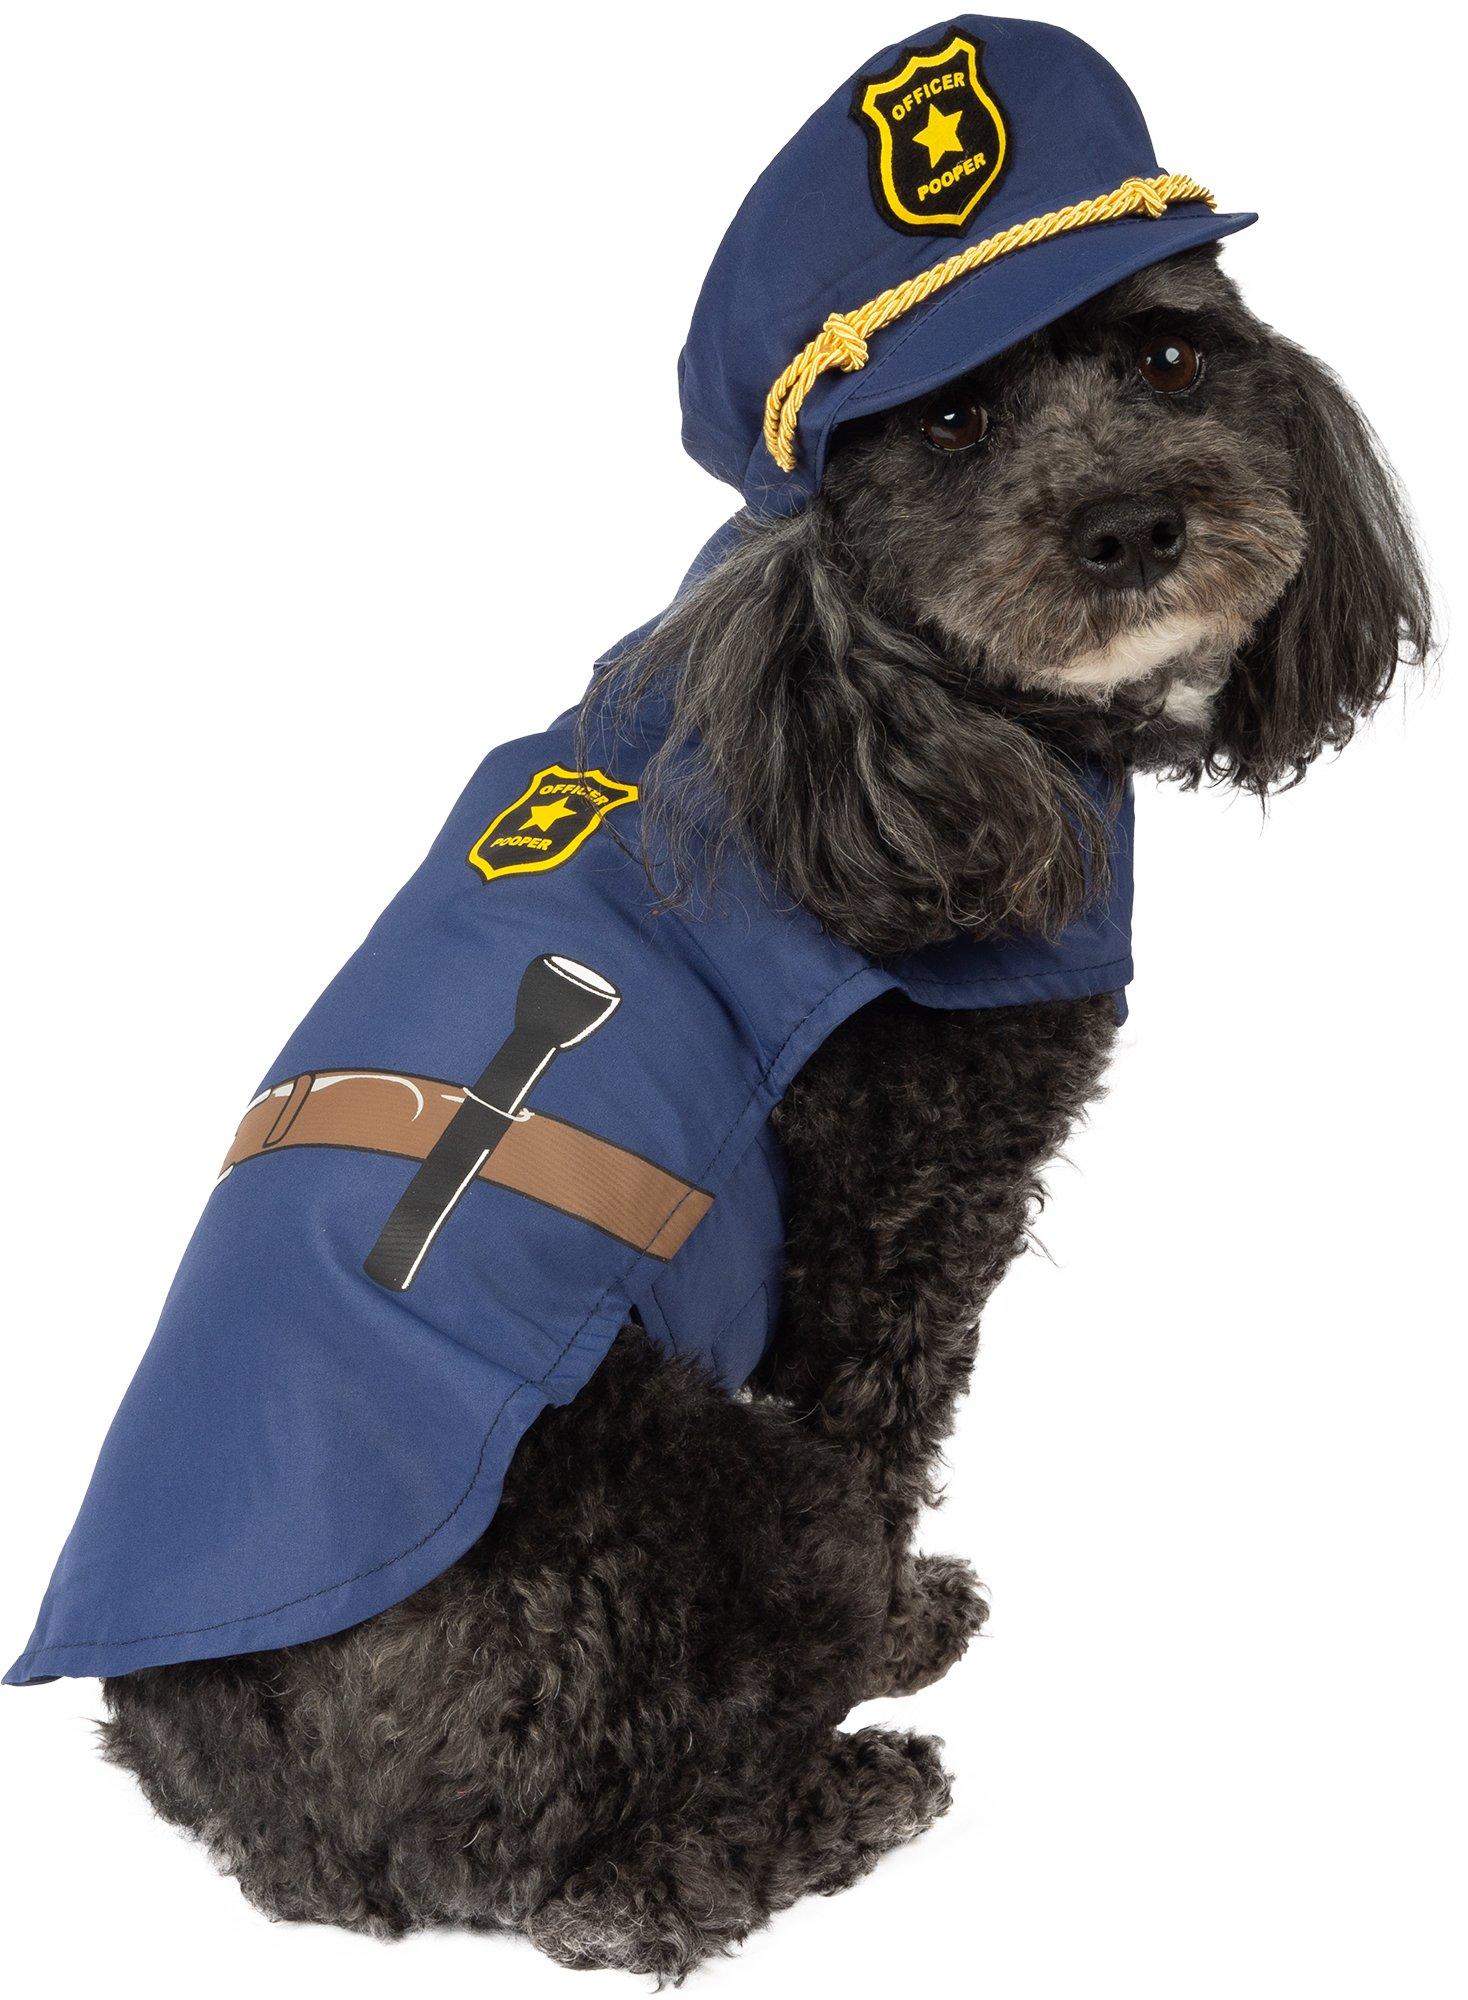 Officer Pooper Dog Costume